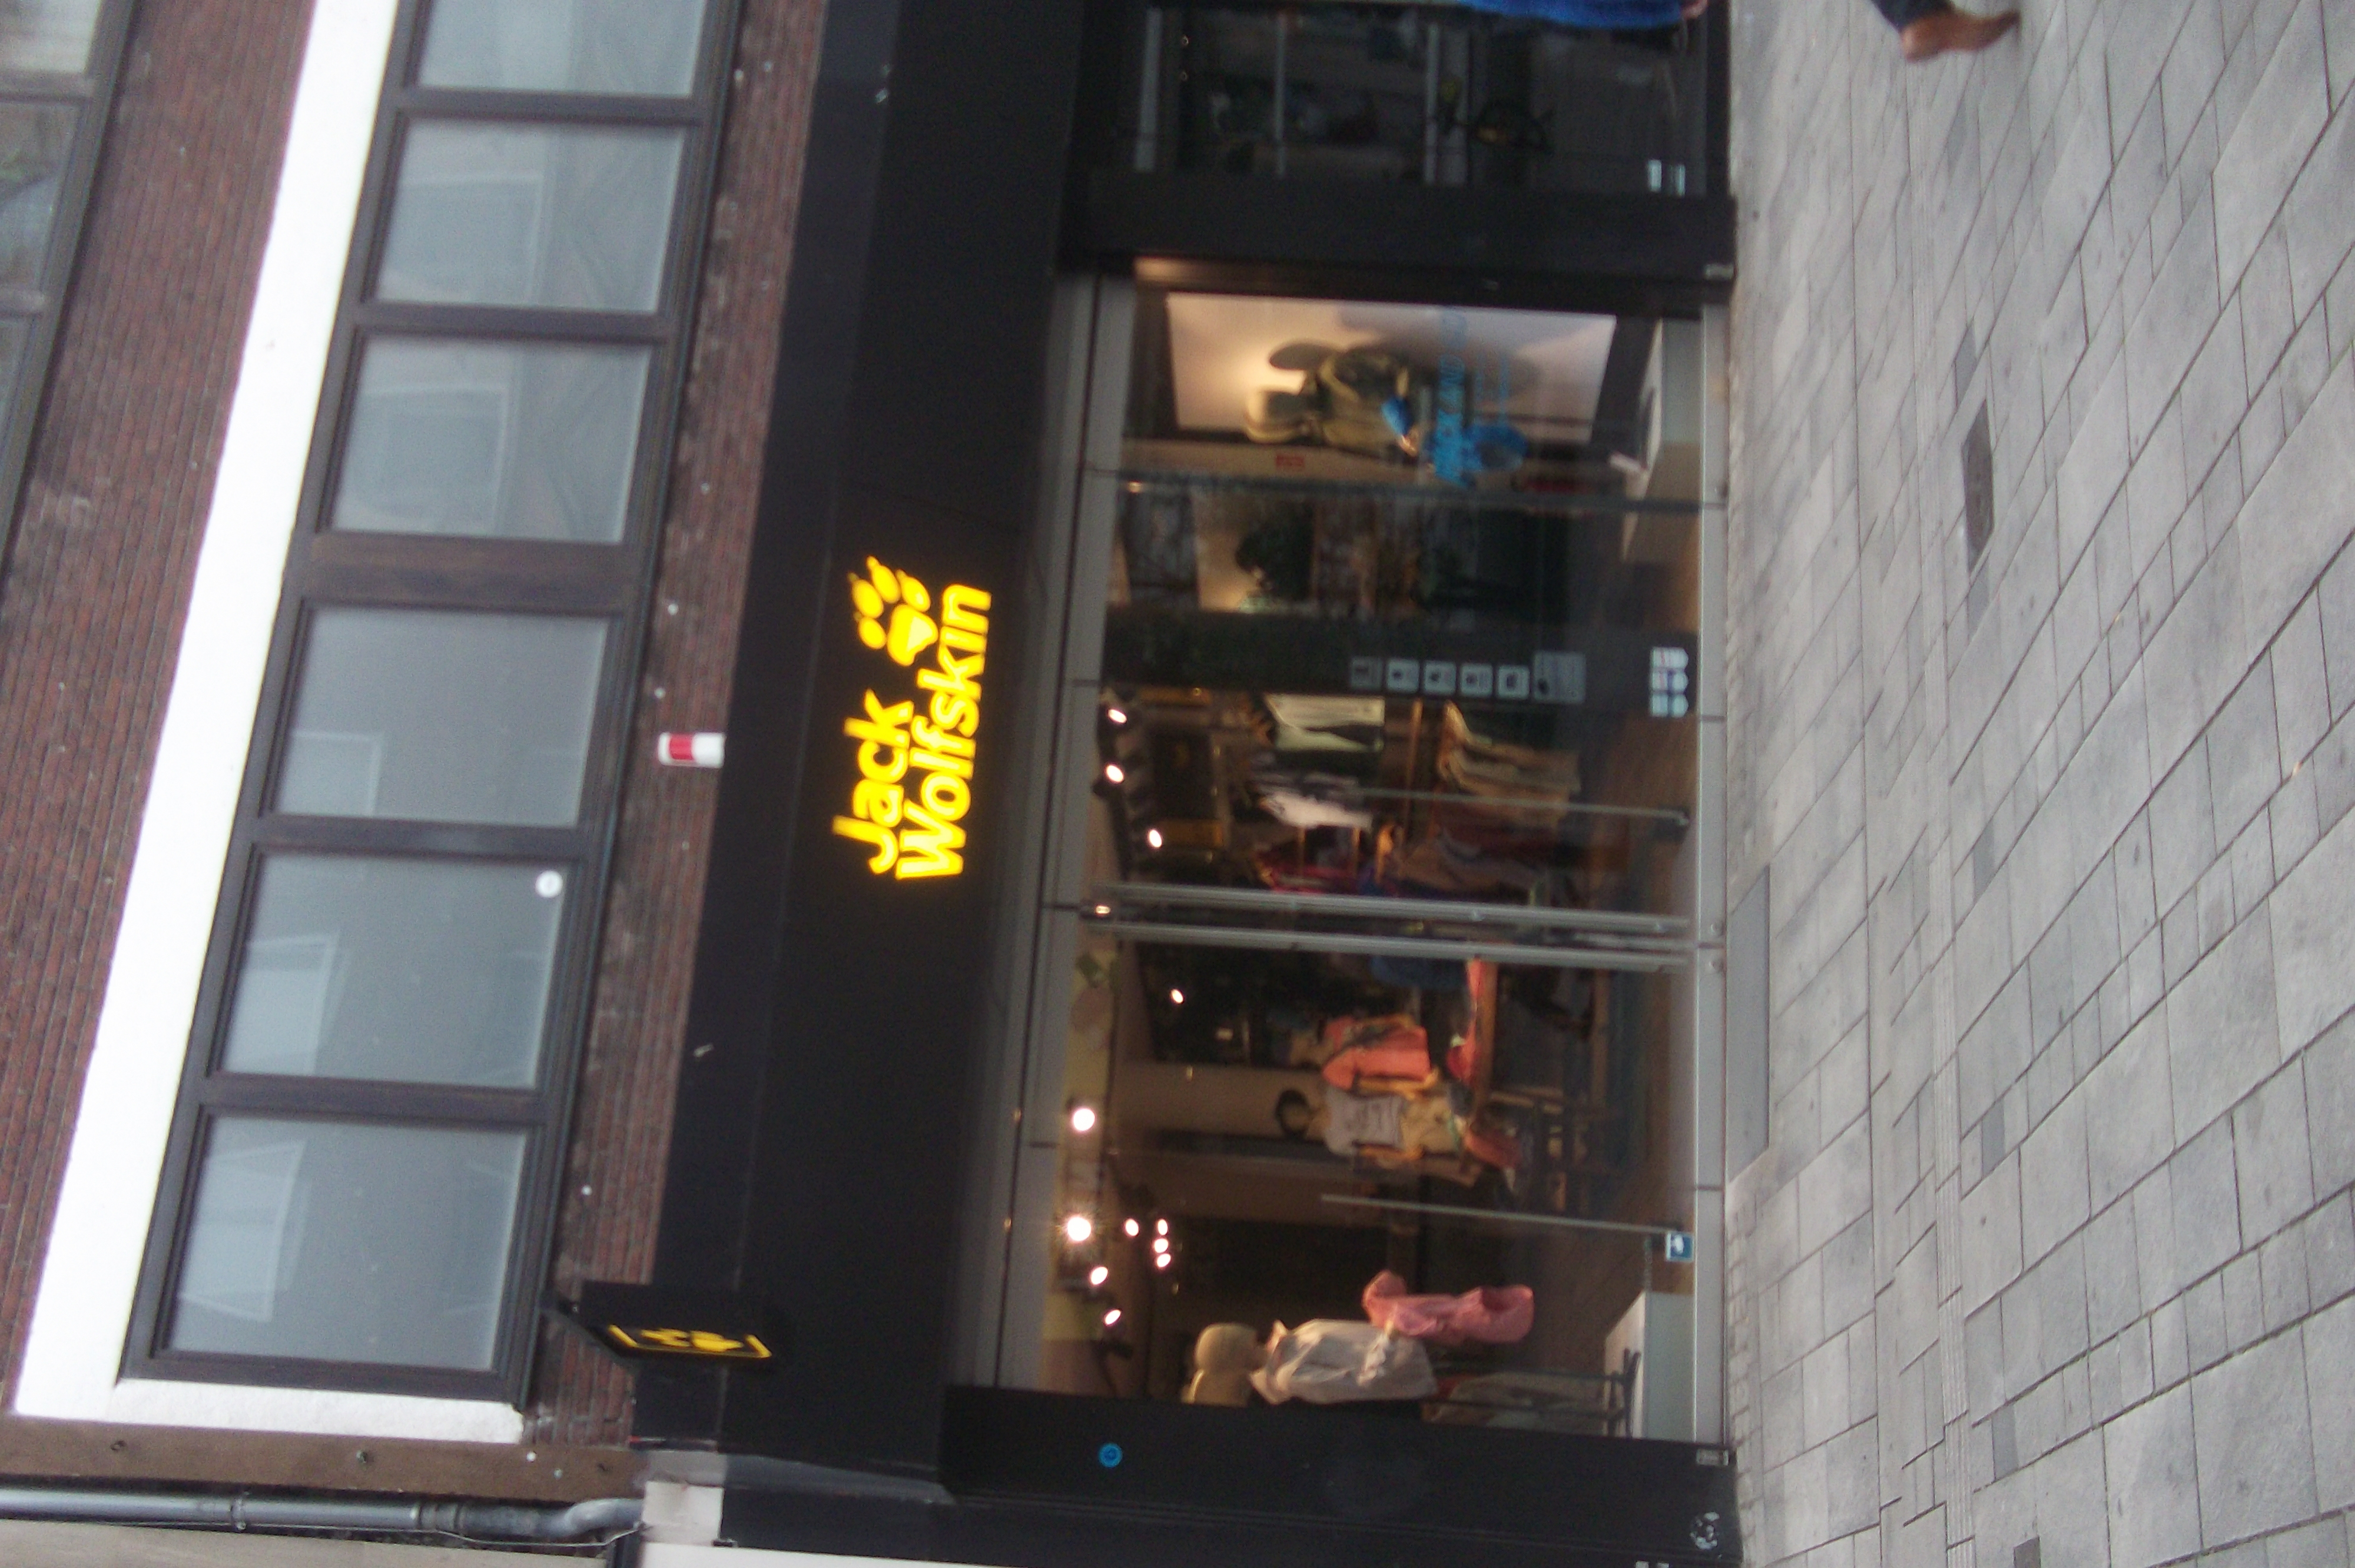 Bild 1 Jack Wolfskin Store in Düsseldorf